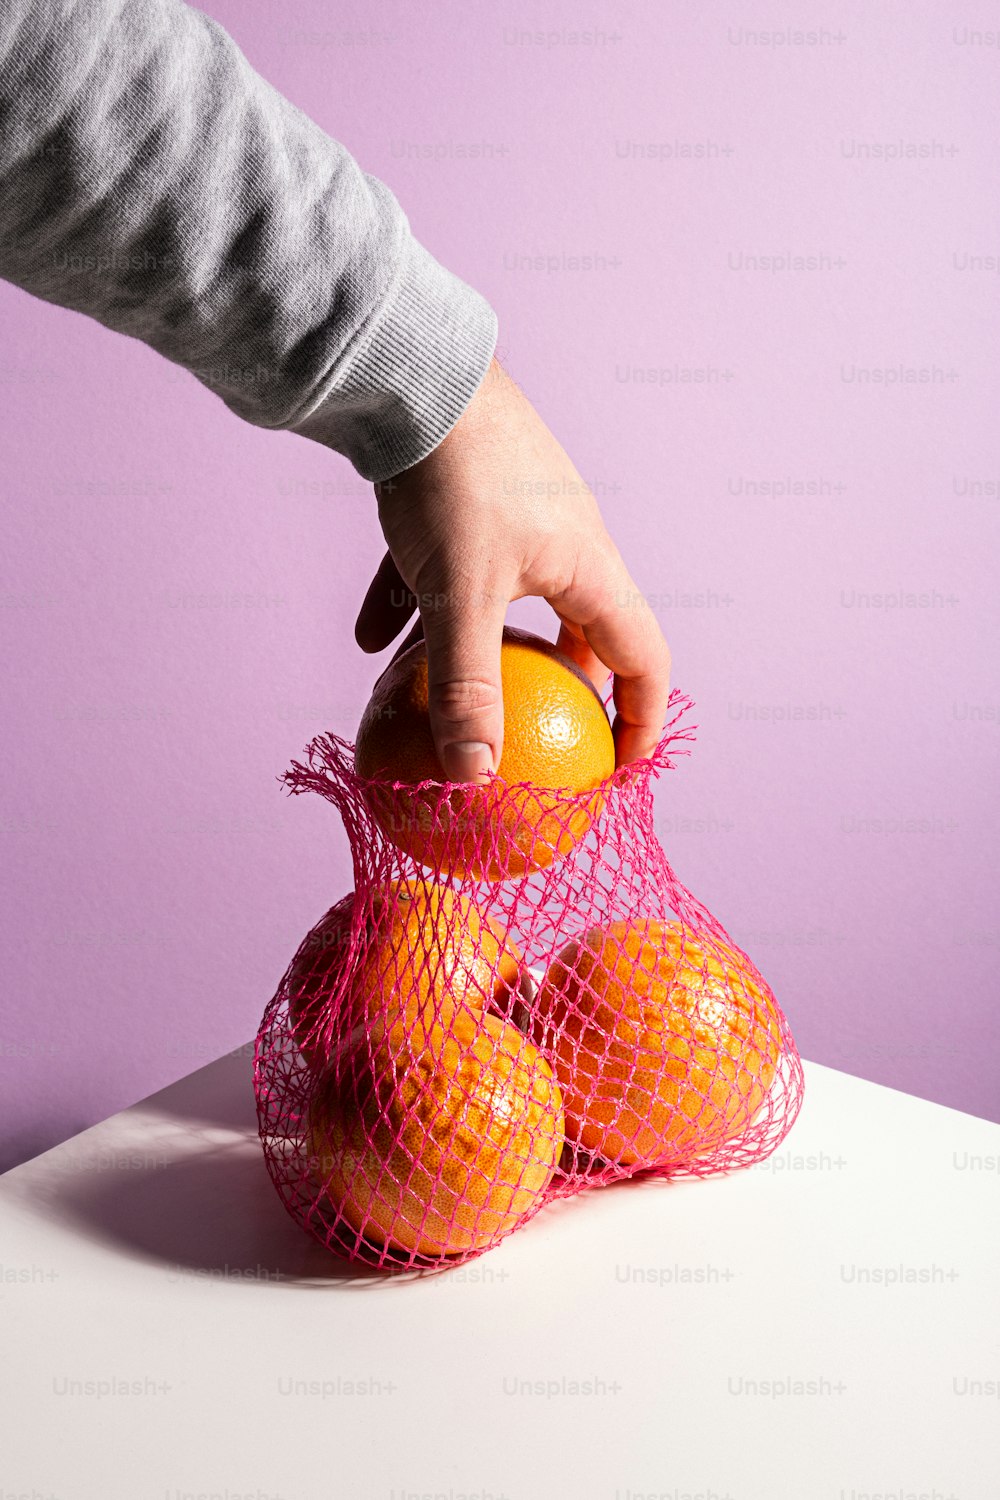 una persona sosteniendo una bolsa de naranjas encima de una mesa